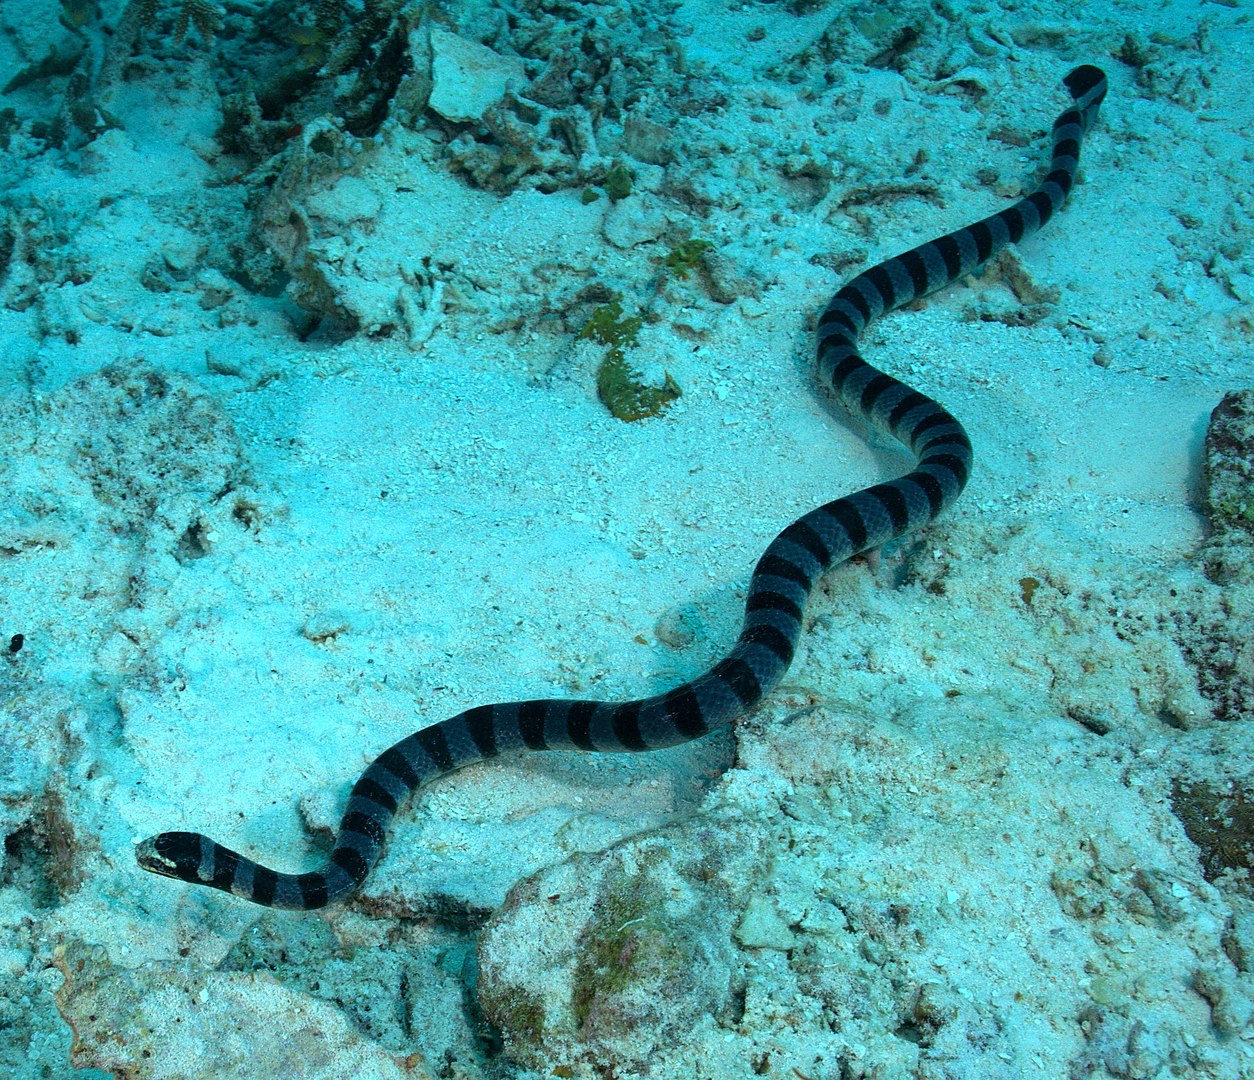 Serpiente marina fotografiada desde la superficie.